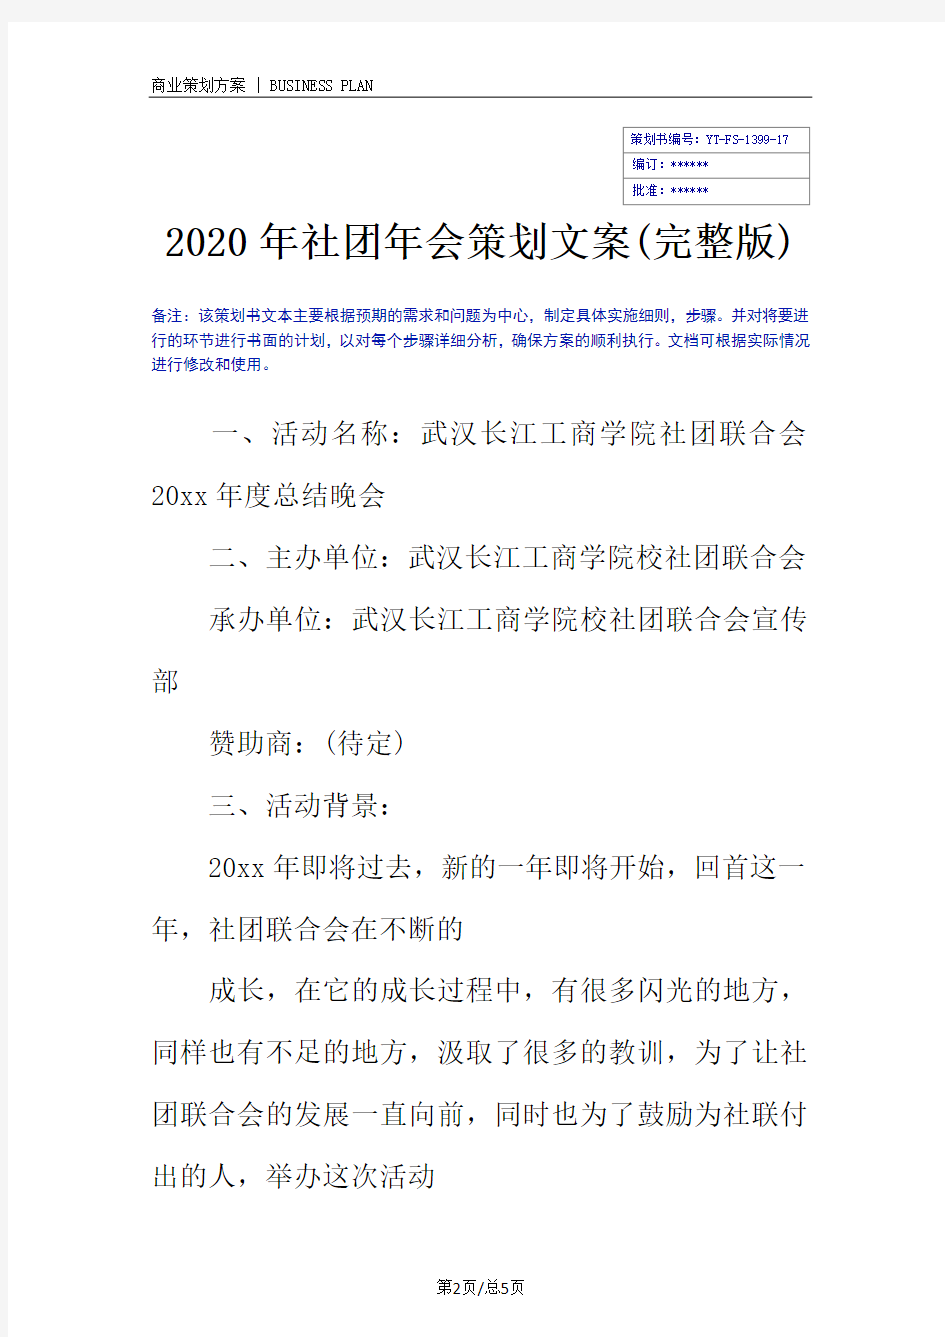 2020年社团年会策划文案(完整版)